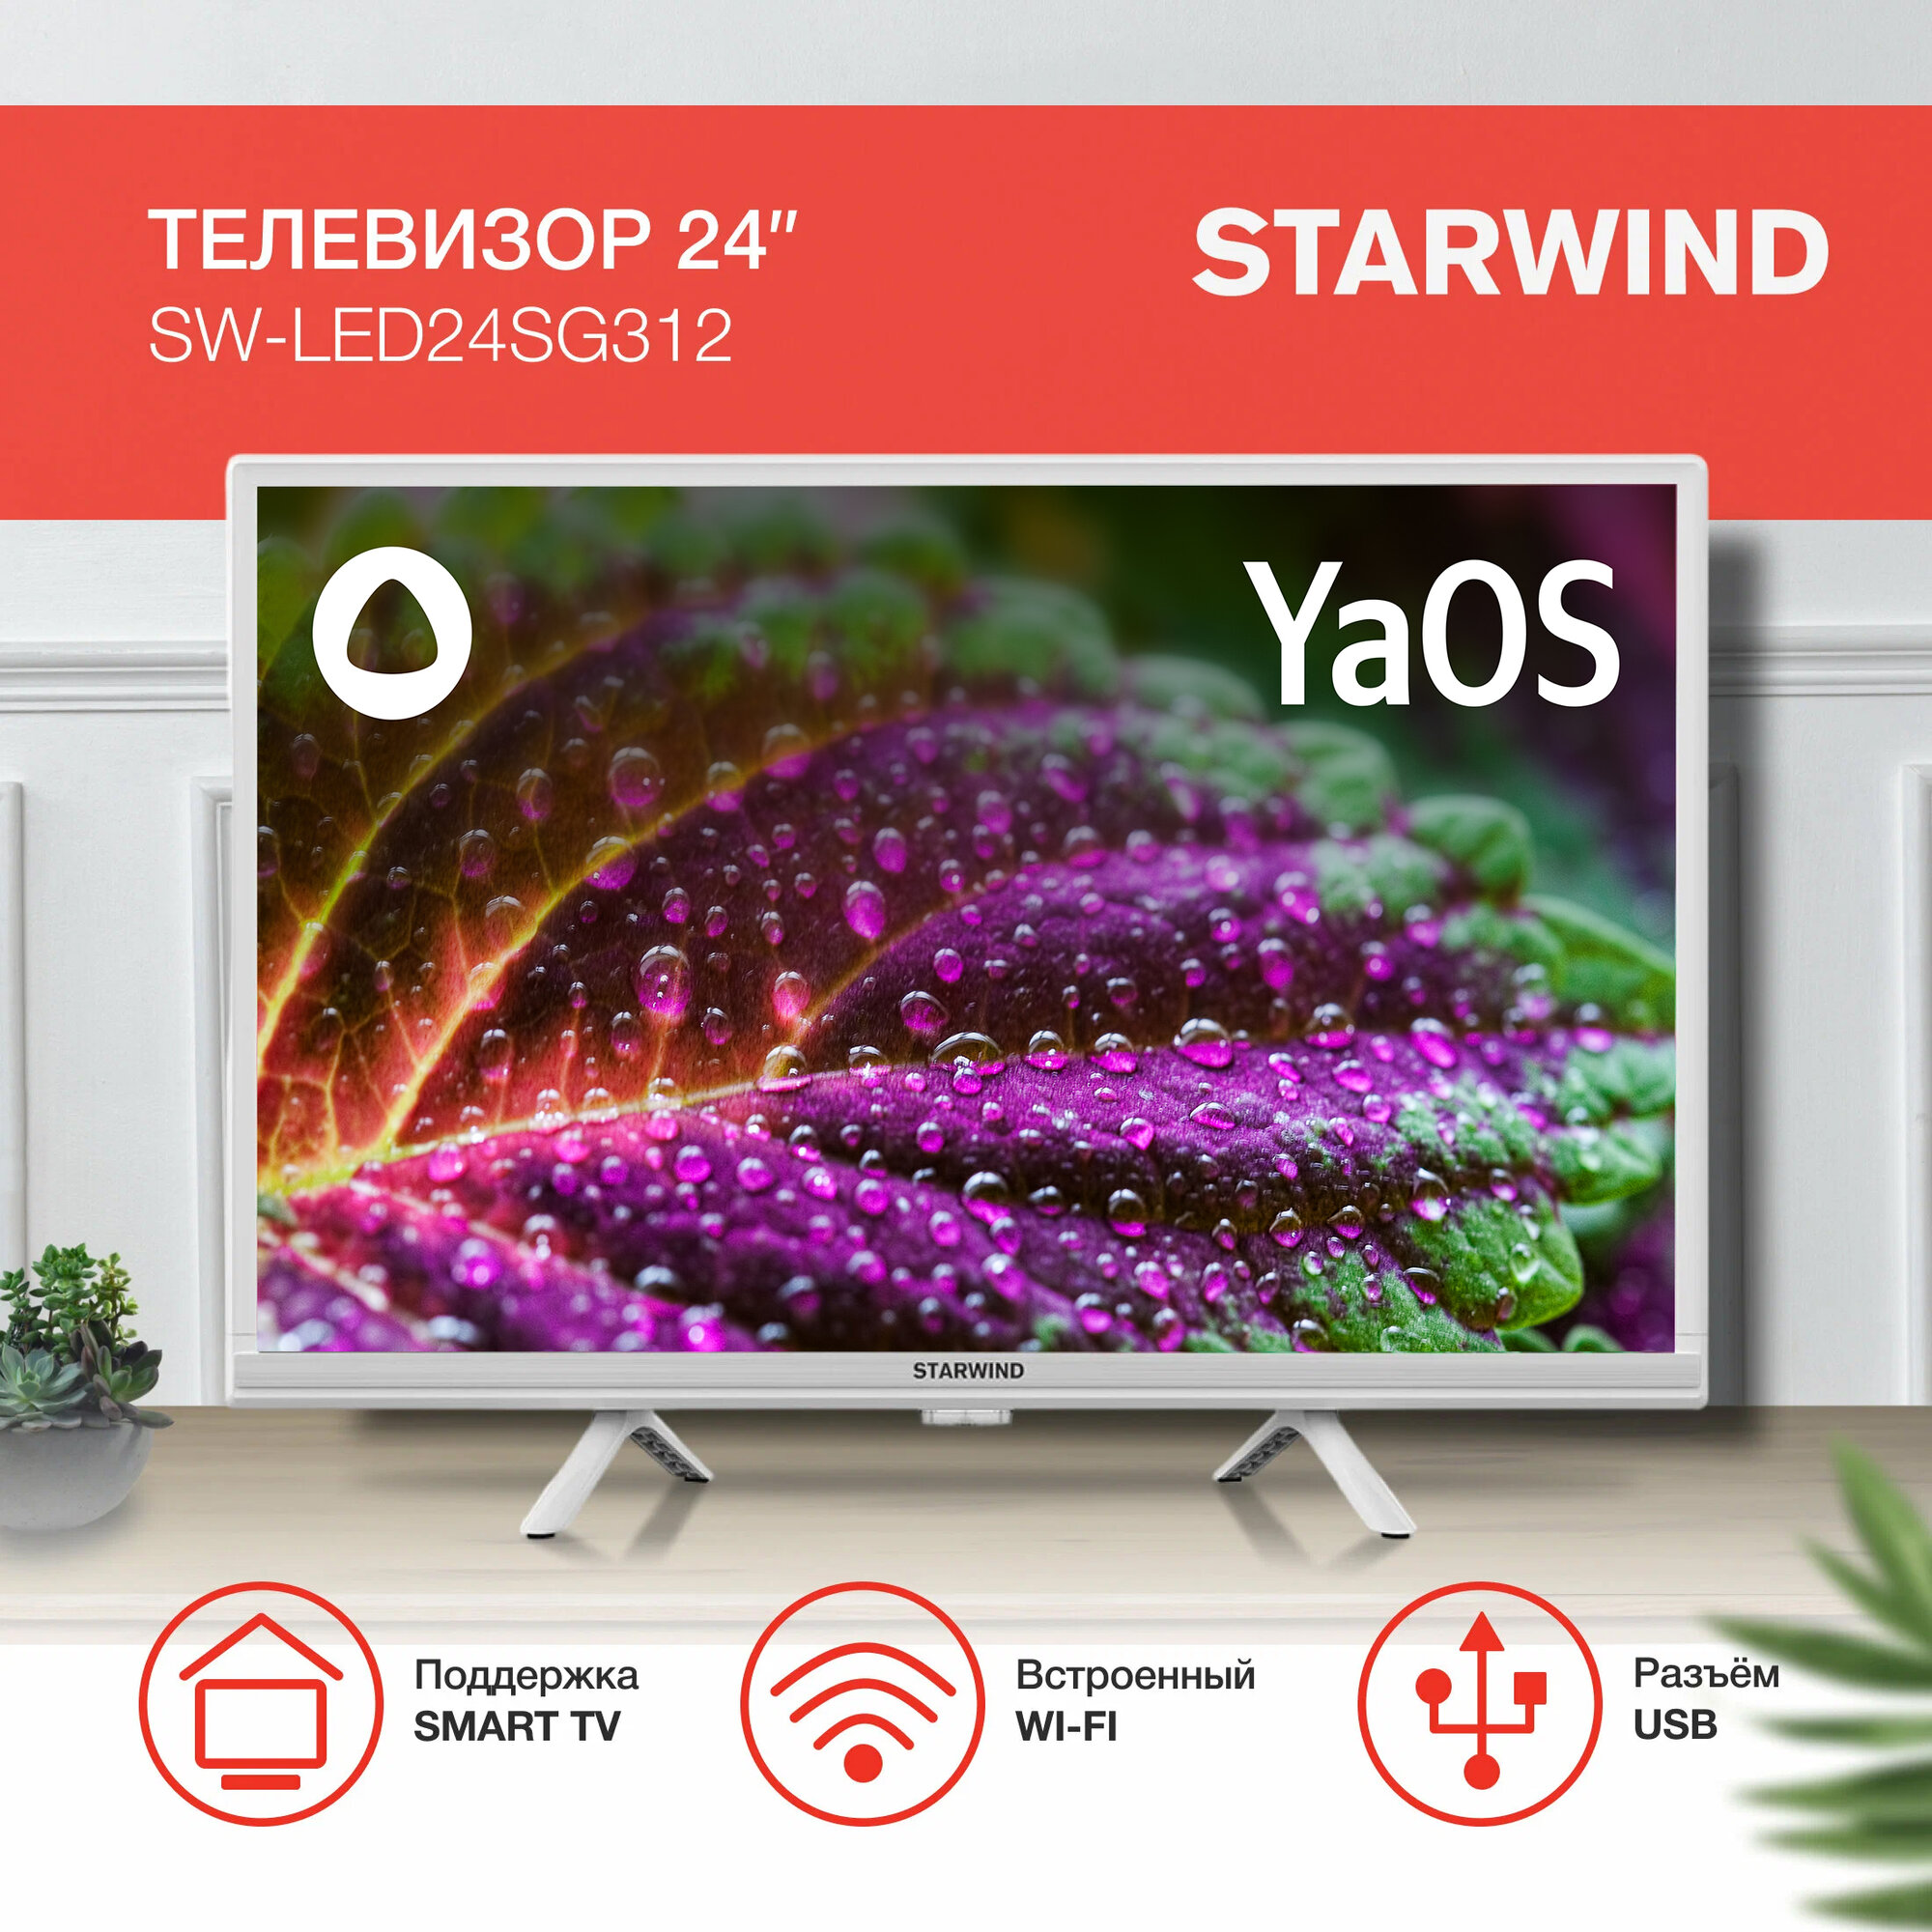 24" Телевизор STARWIND SW-LED24SG312 LED HDR